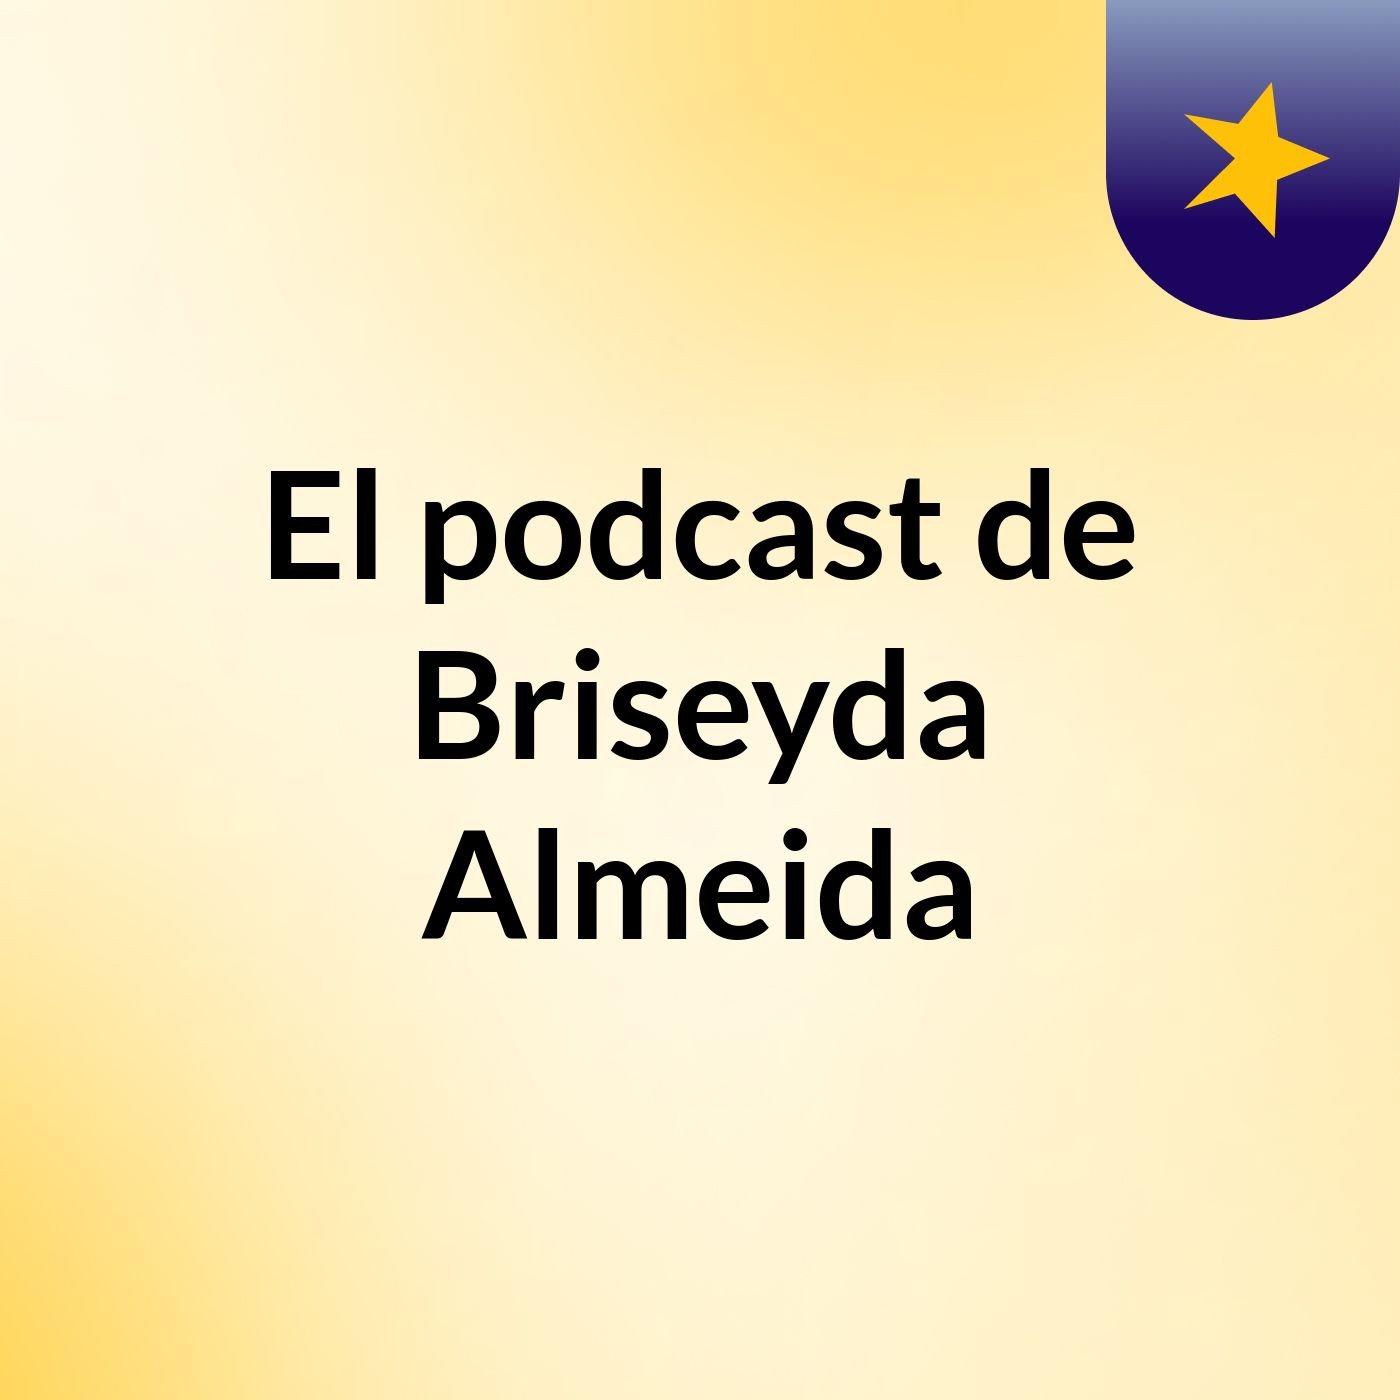 El podcast de Briseyda Almeida